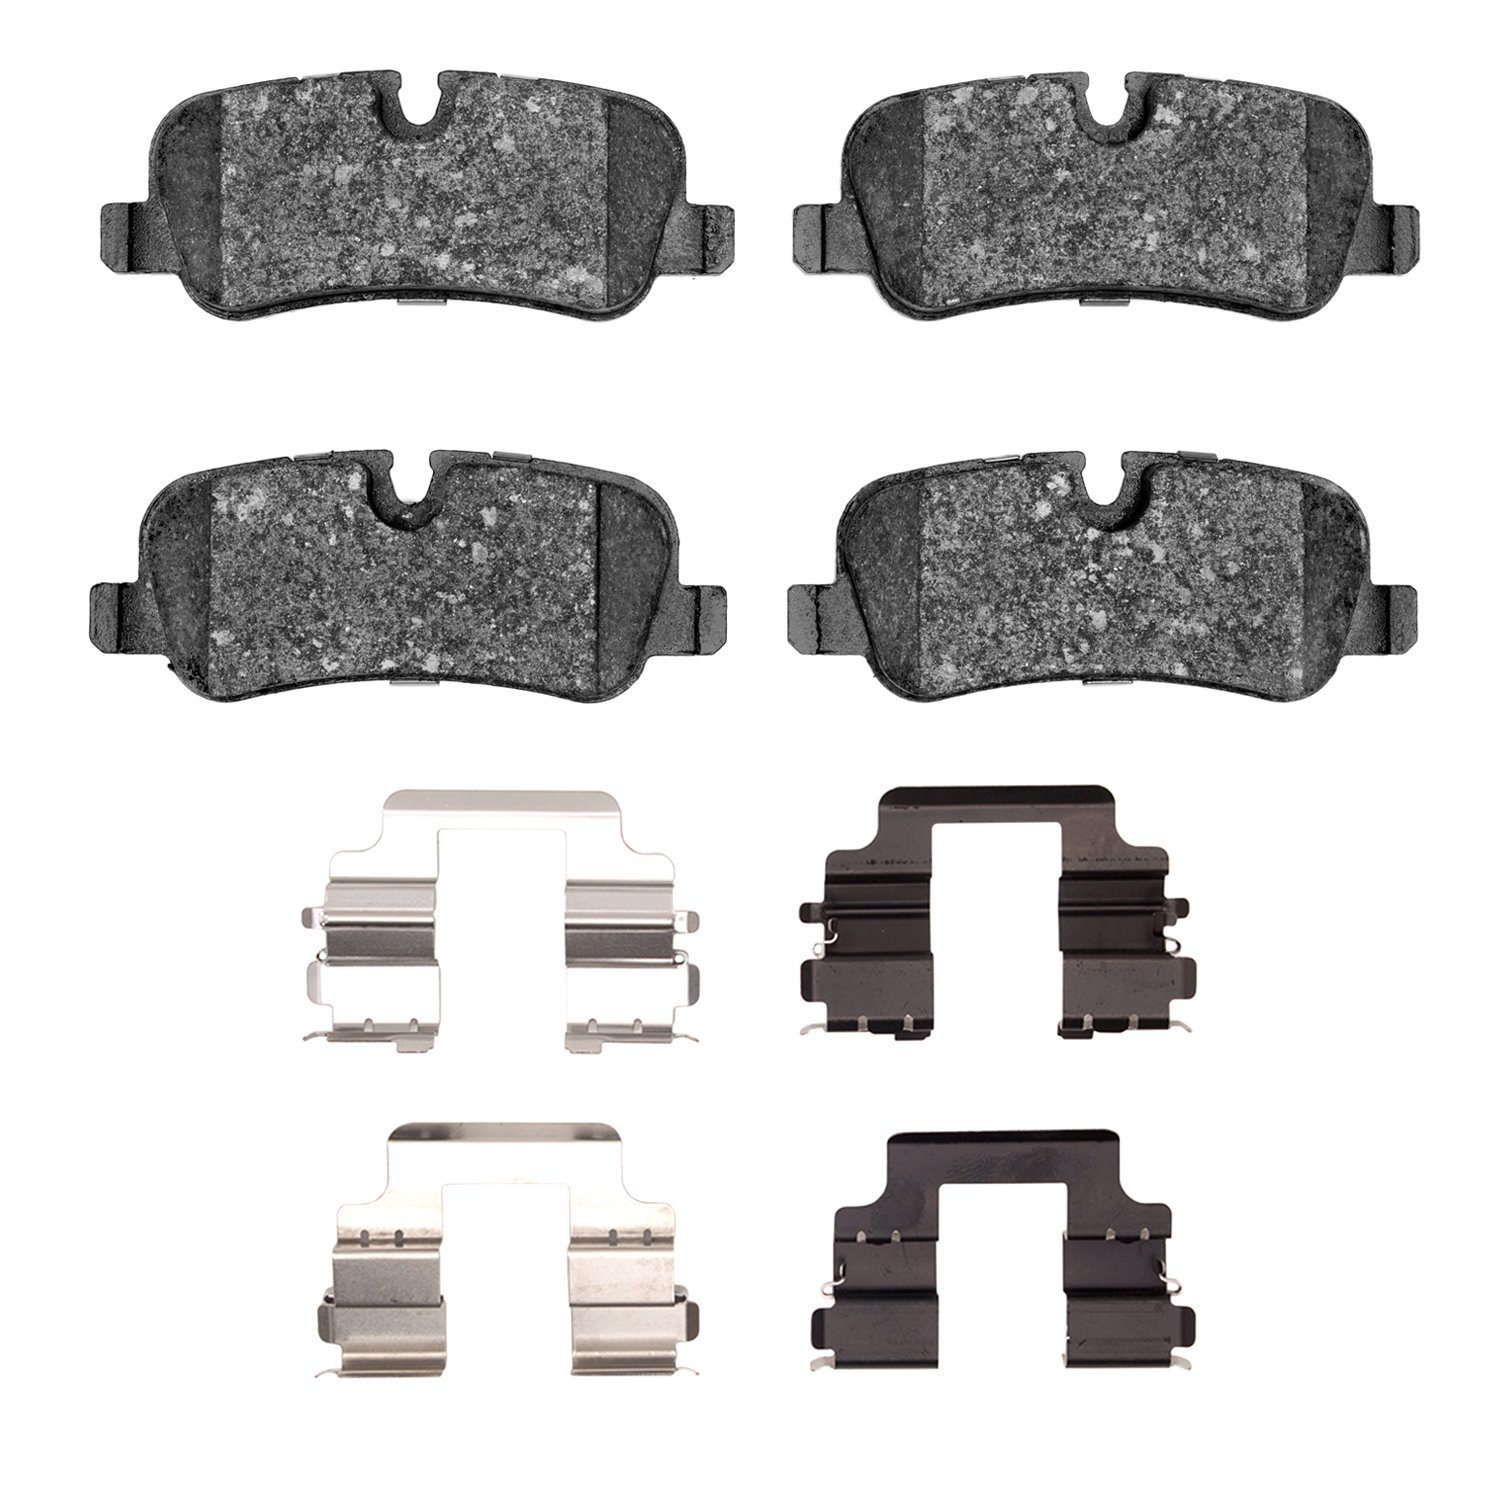 1551-1099-01 5000 Advanced Low-Metallic Brake Pads & Hardware Kit, 2010-2013 Land Rover, Position: Rear